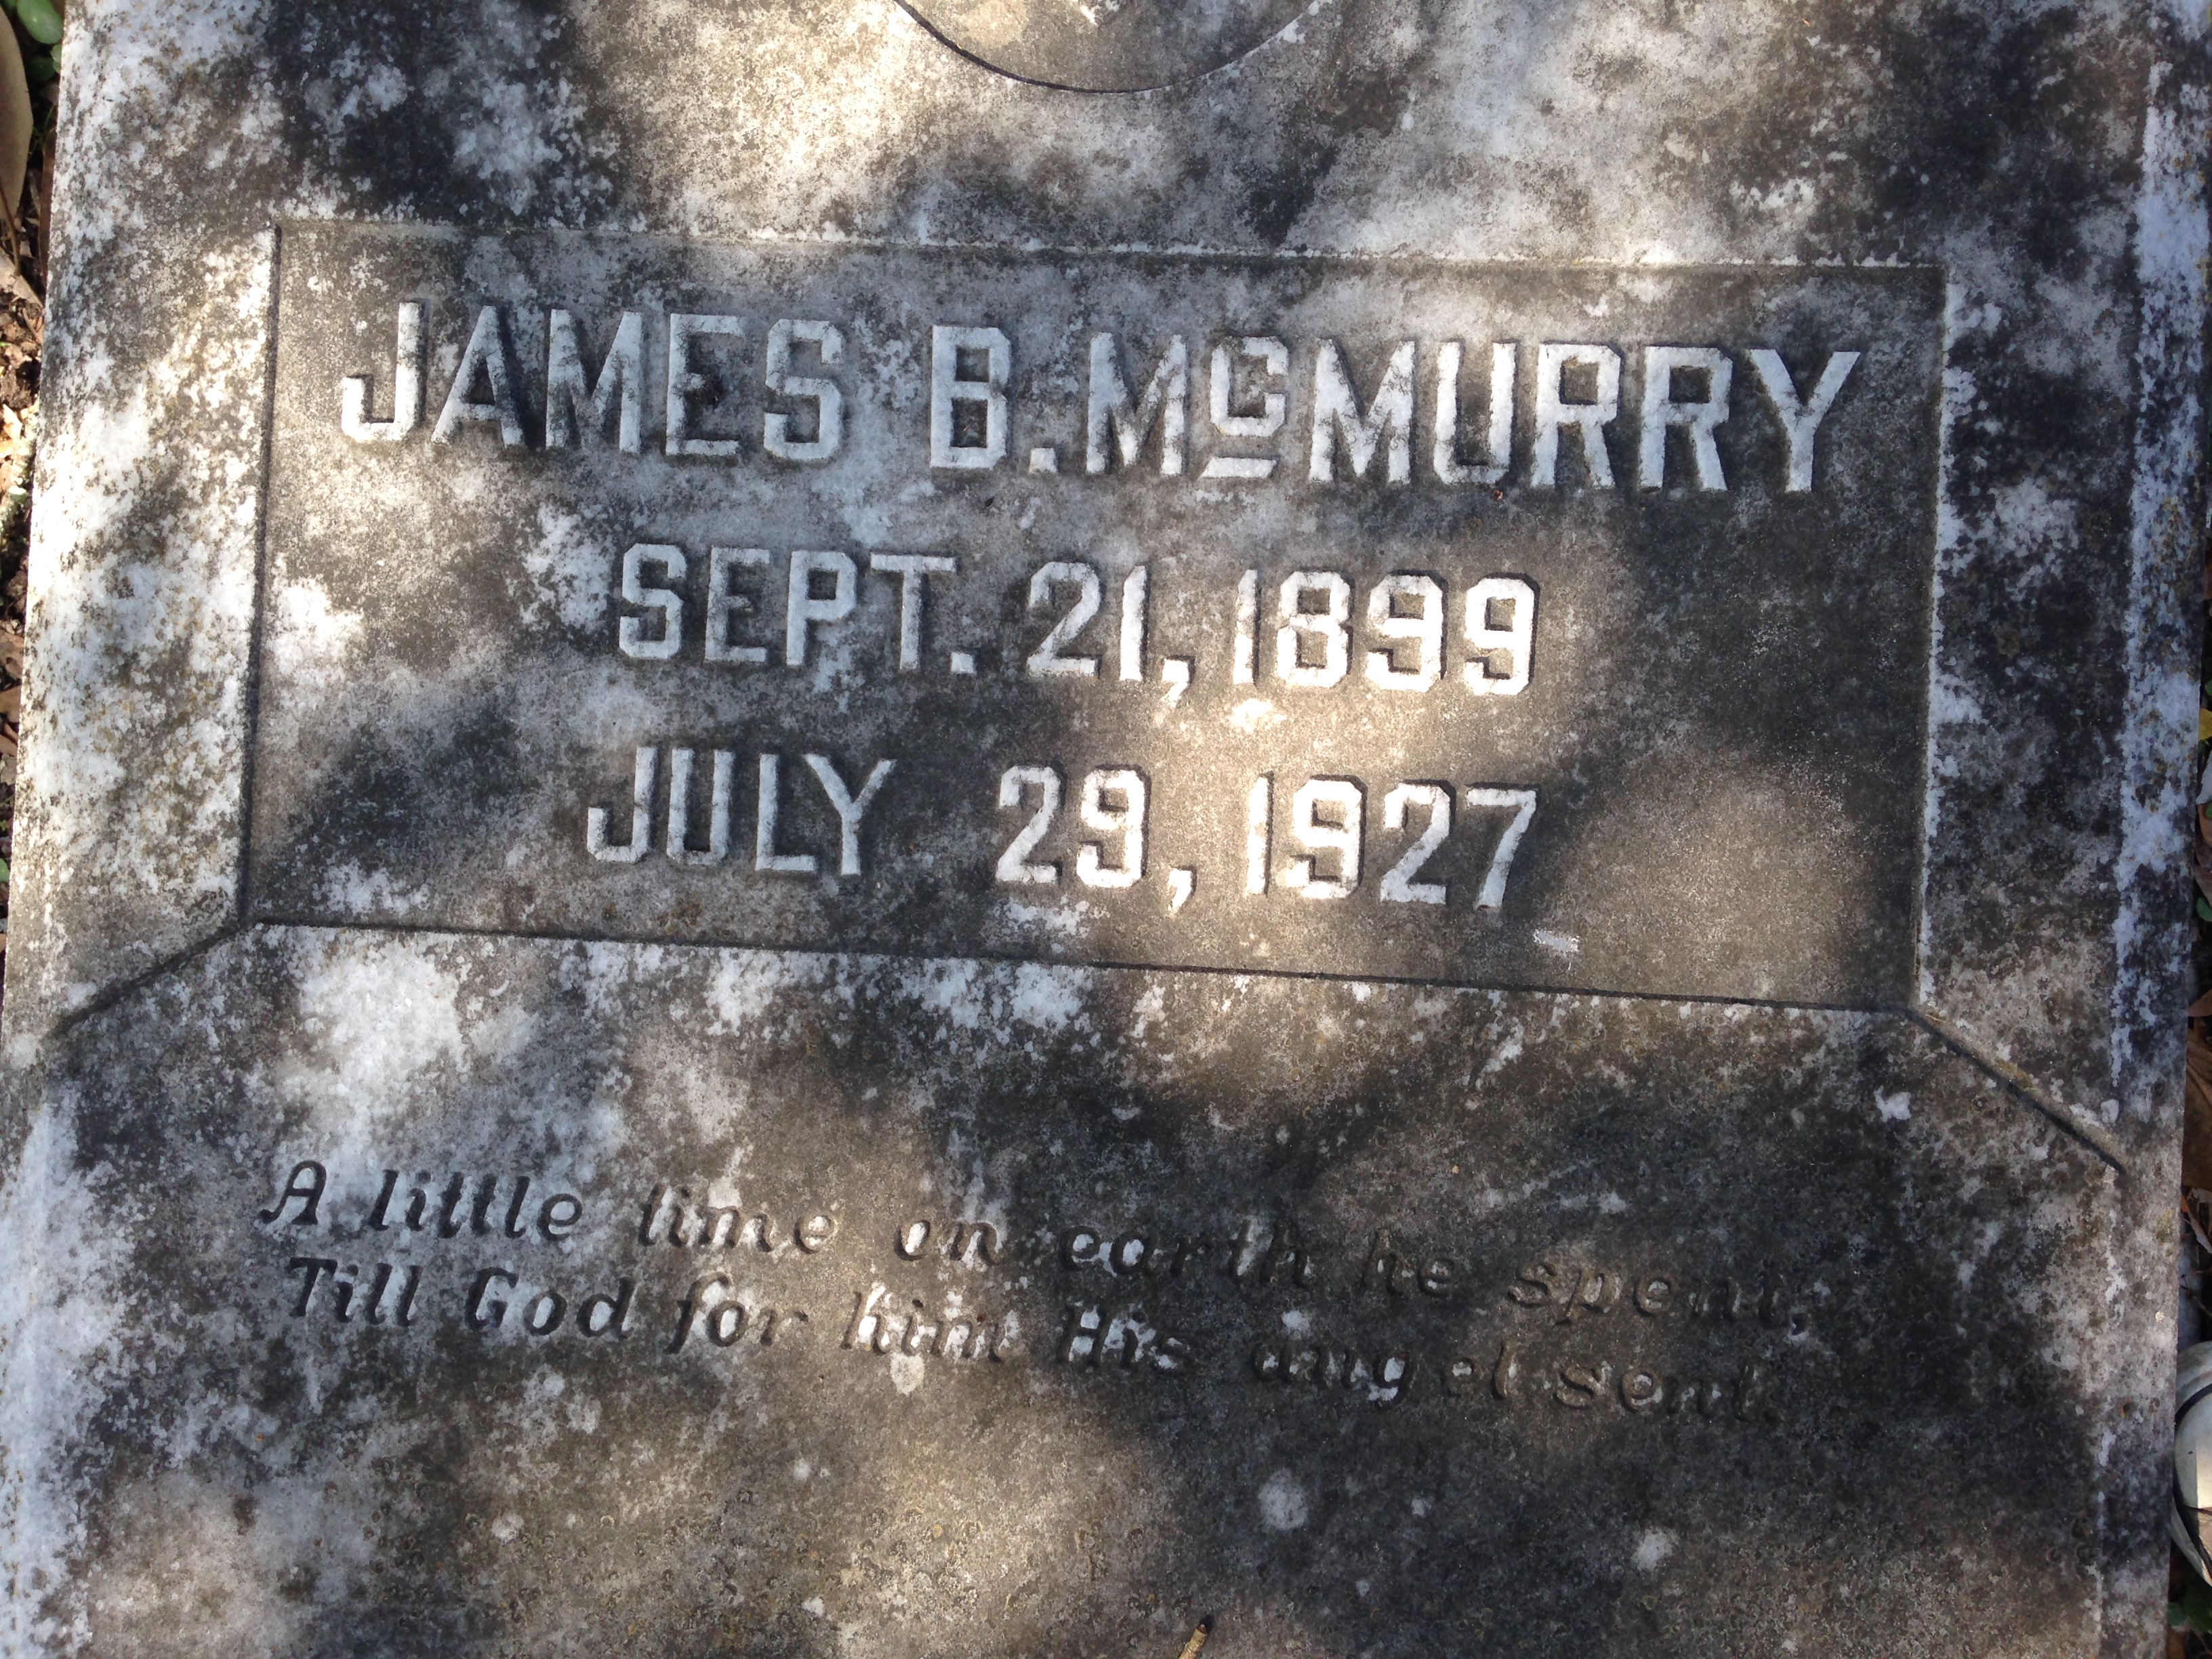 James B. McMurry